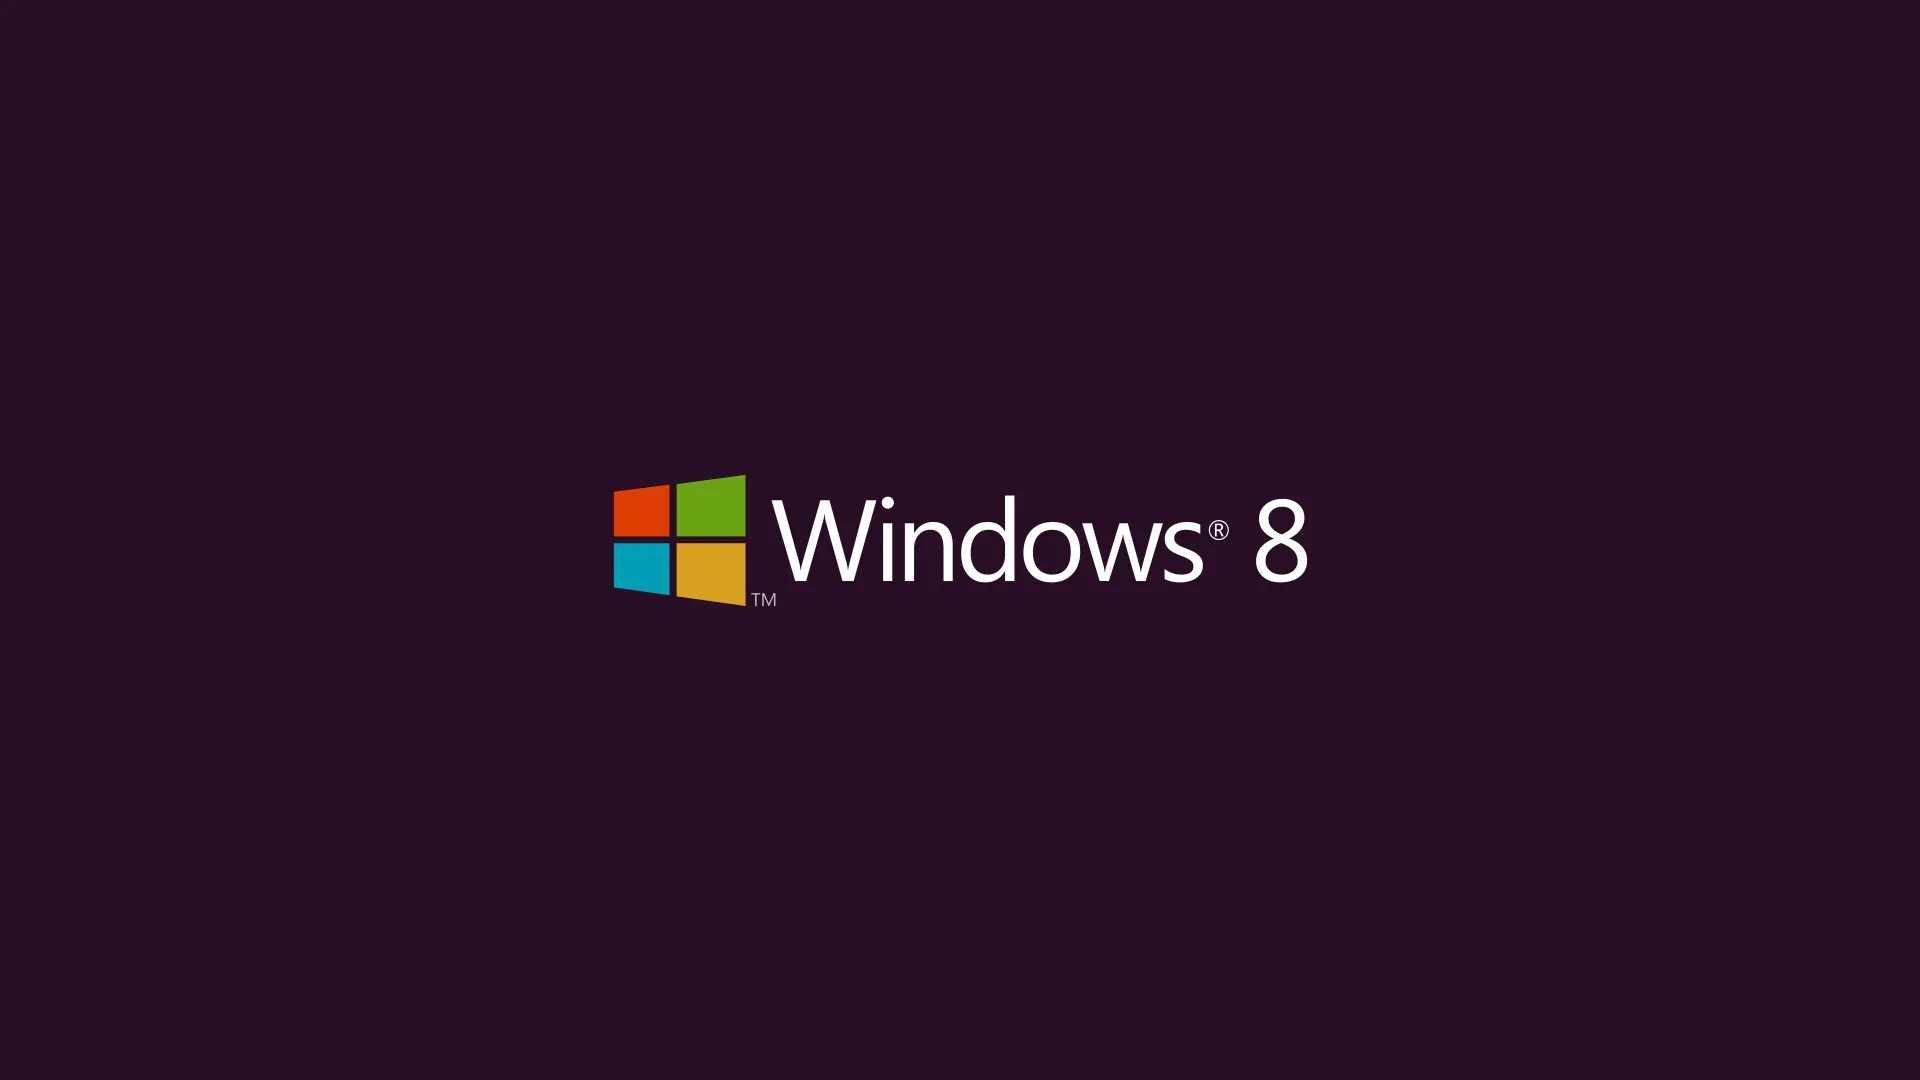 Window 8.2. Виндовс 8.1. Виндовс 8.2. Картинки Windows 8.1. Версии виндовс 8.